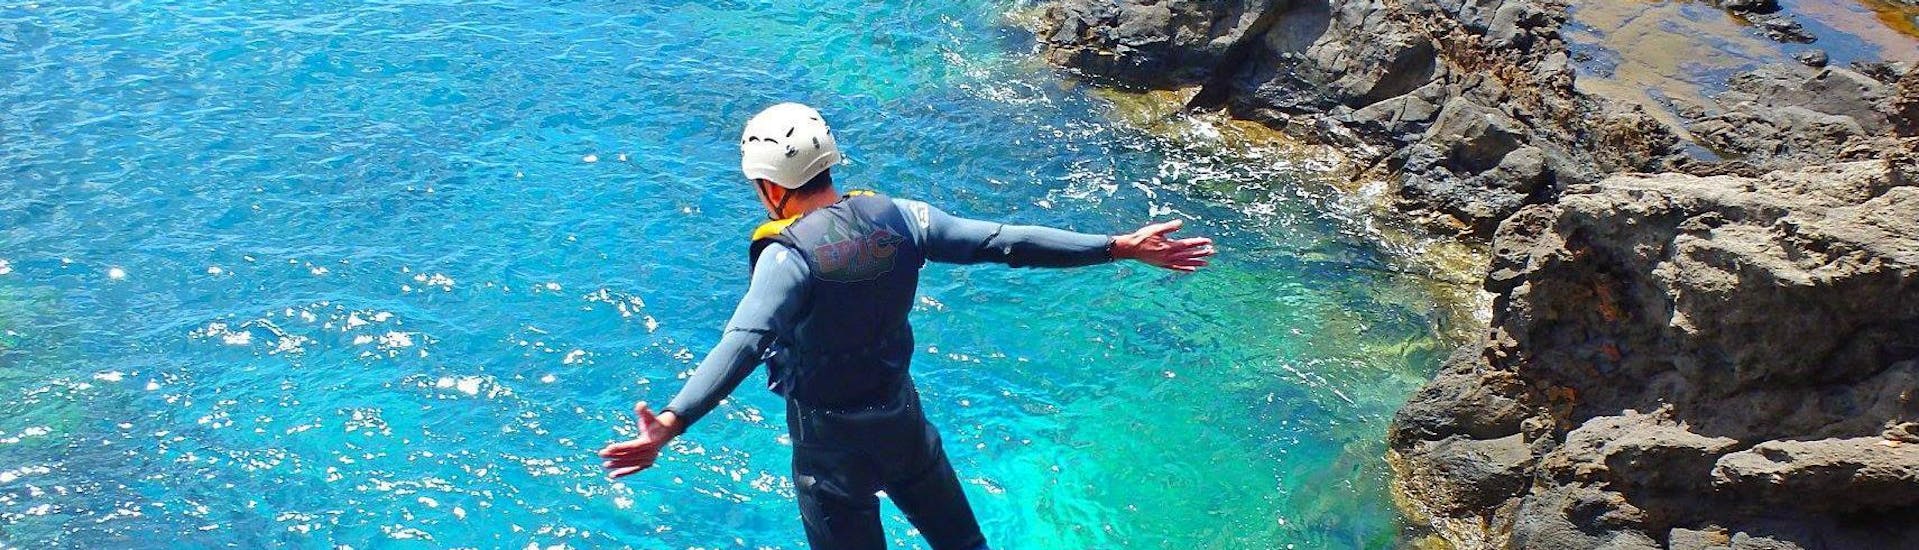 Ein Teilnehmer des Coasteering auf der Ponta de São Lourenço mit Epic Madeira springt in das türkisfarbene Wasser des Ozeans.